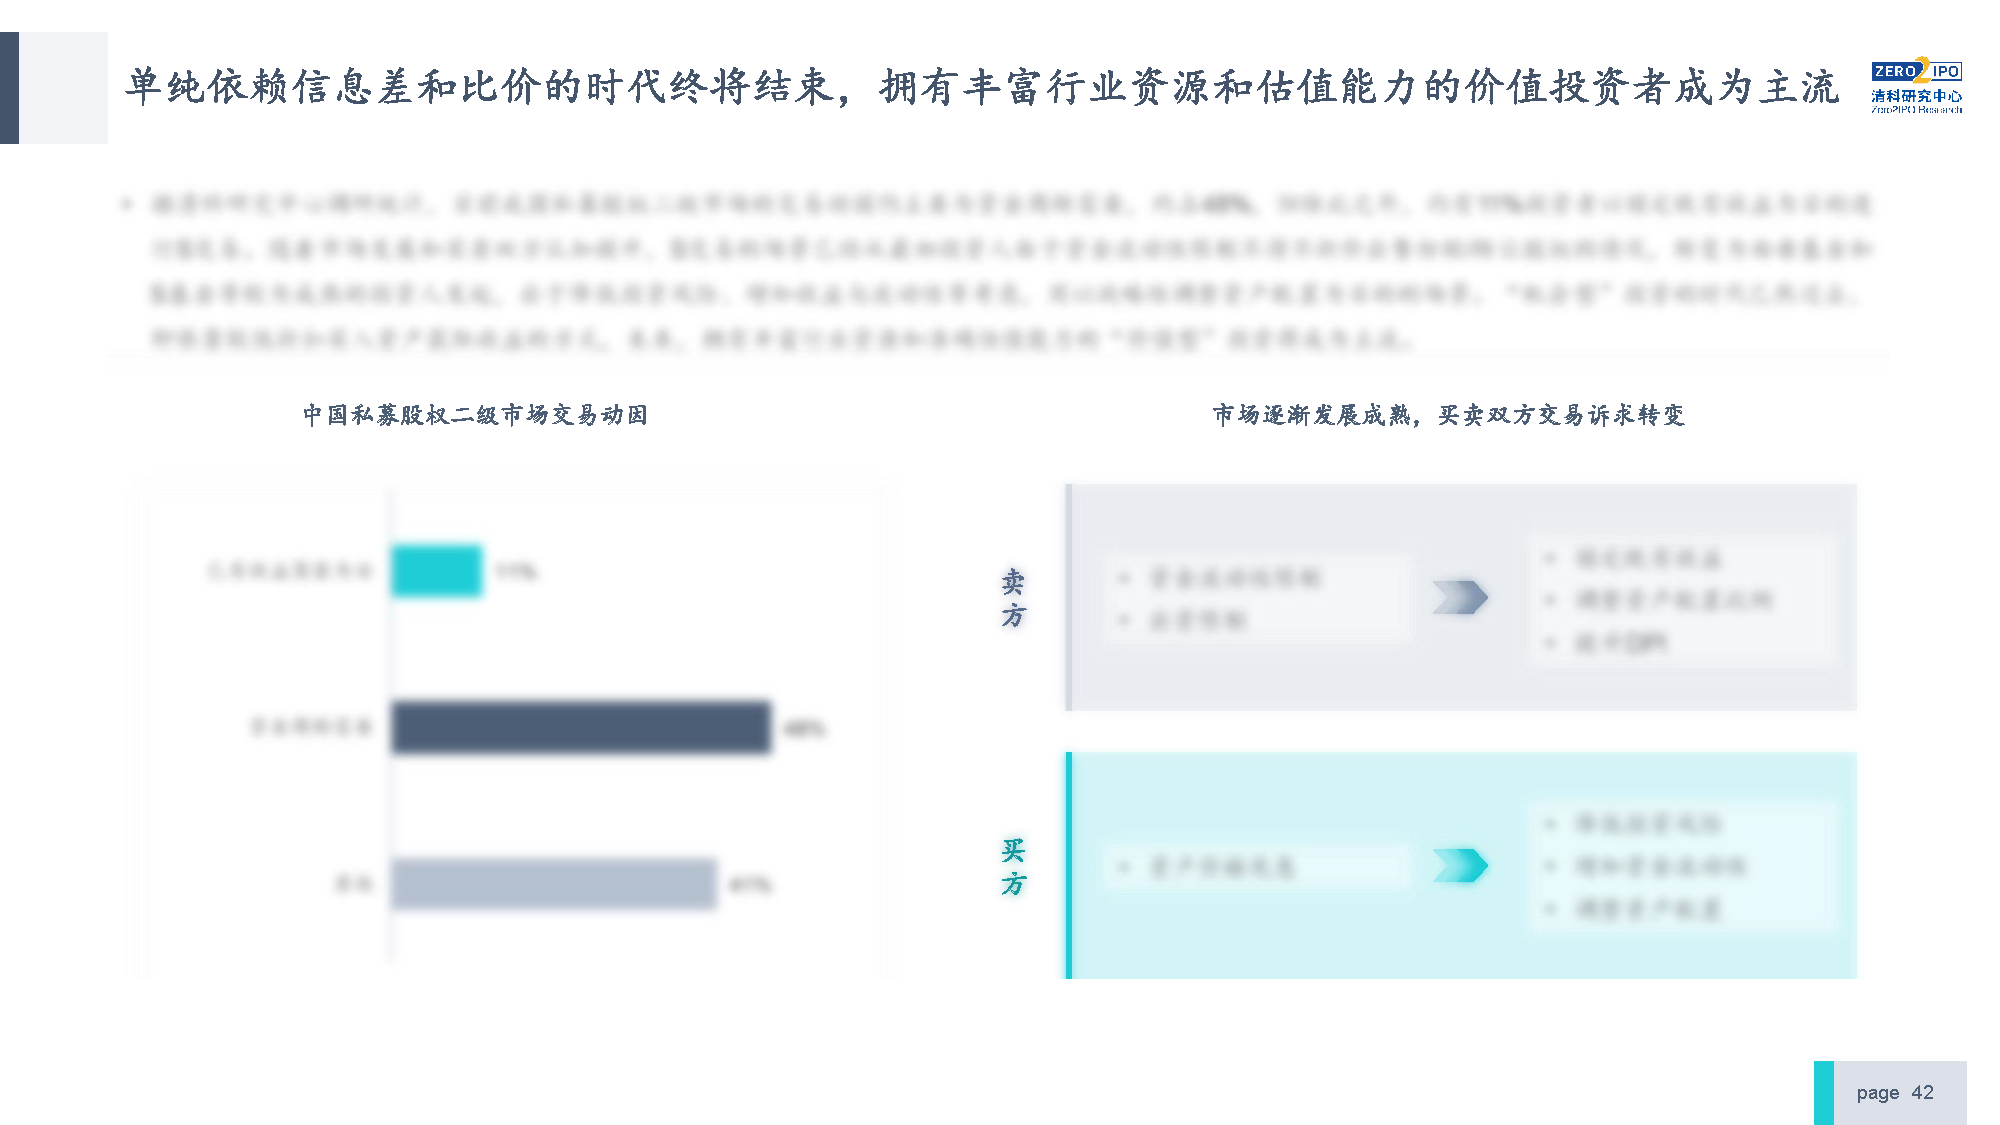 【发布版】2022年中国私募股权S交易研究报告_页面_42.png